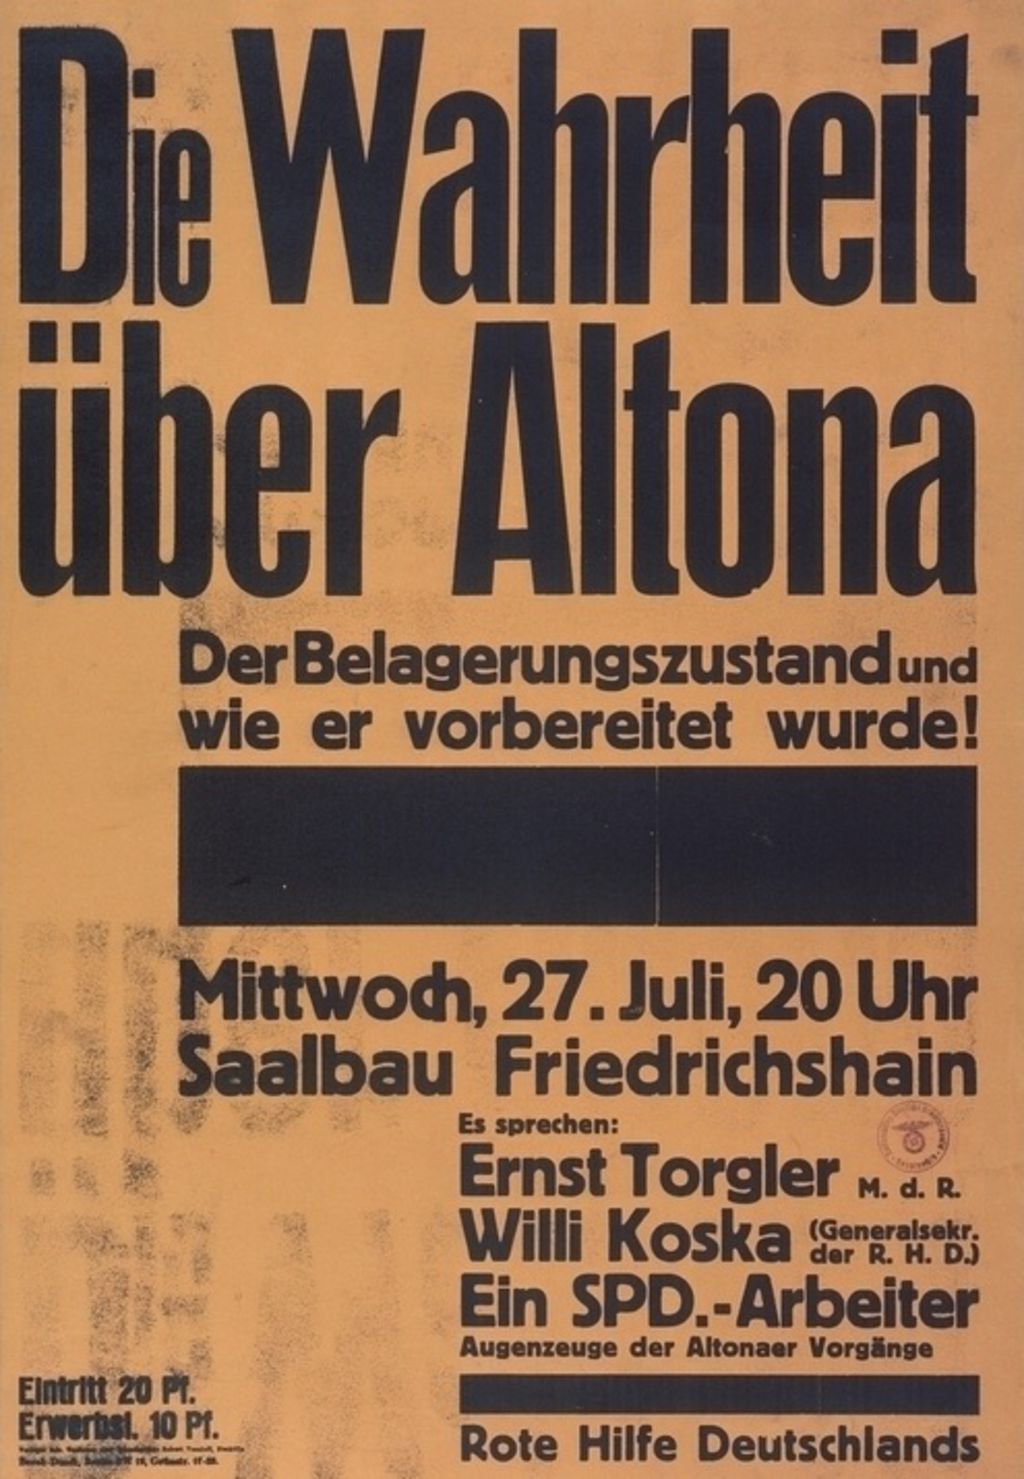 Plakat: "Die Wahrheit über Altona", 1932